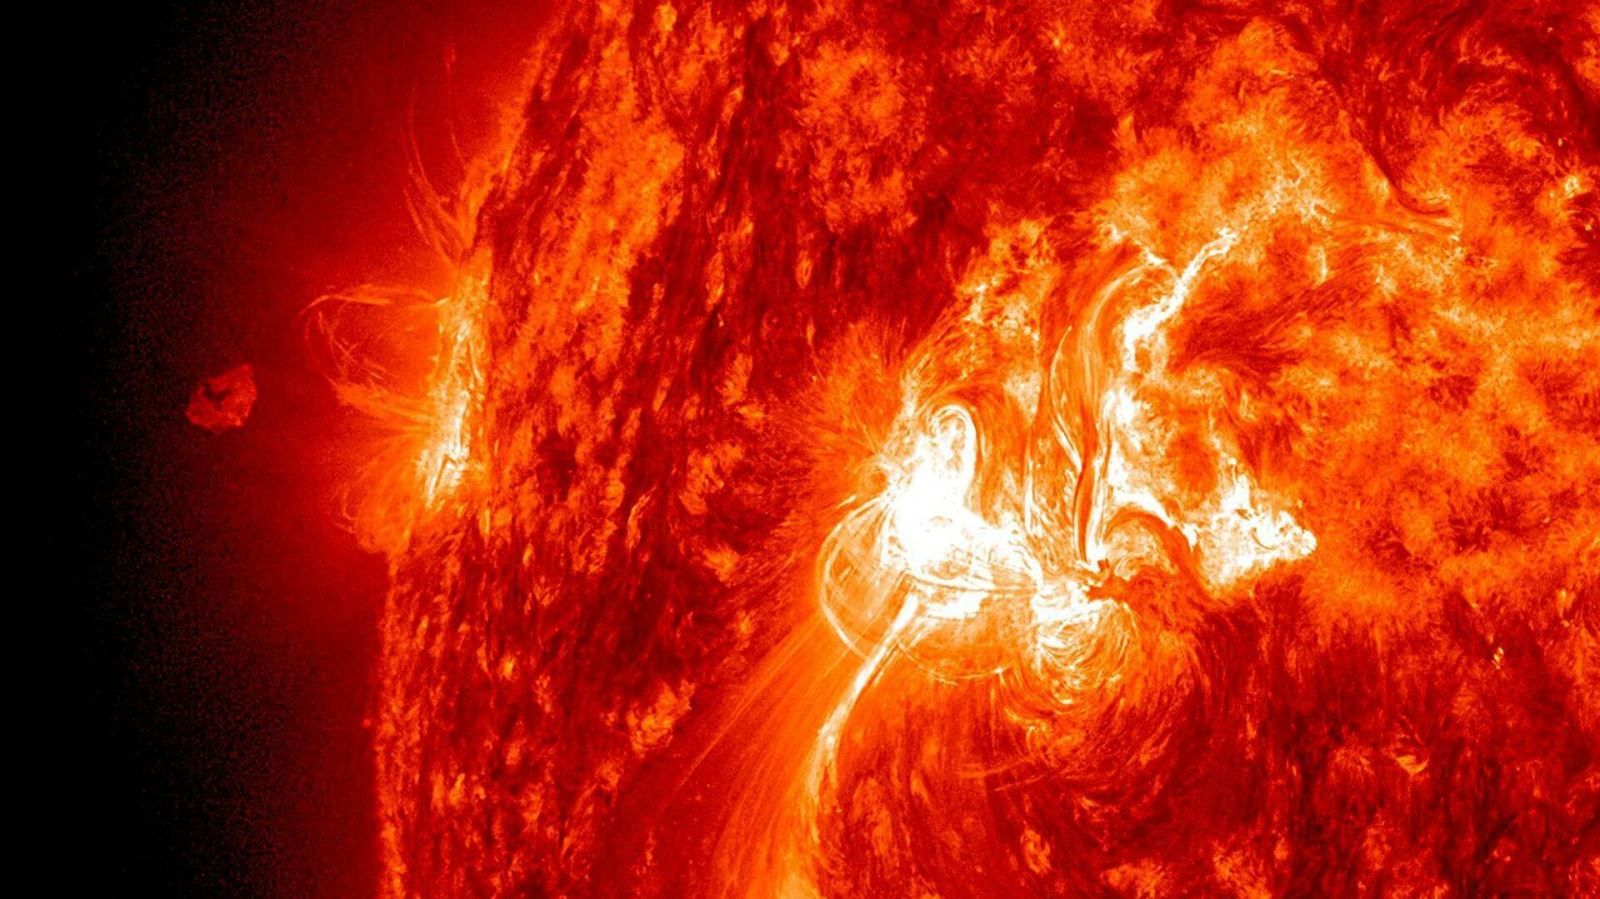 Bão Mặt Trời lớn nhất trong nhiều năm, gây gián đoạn tín hiệu vô tuyến trên Trái đất. Ảnh minh họa: Trung tâm bay không gian Goddard của NASA